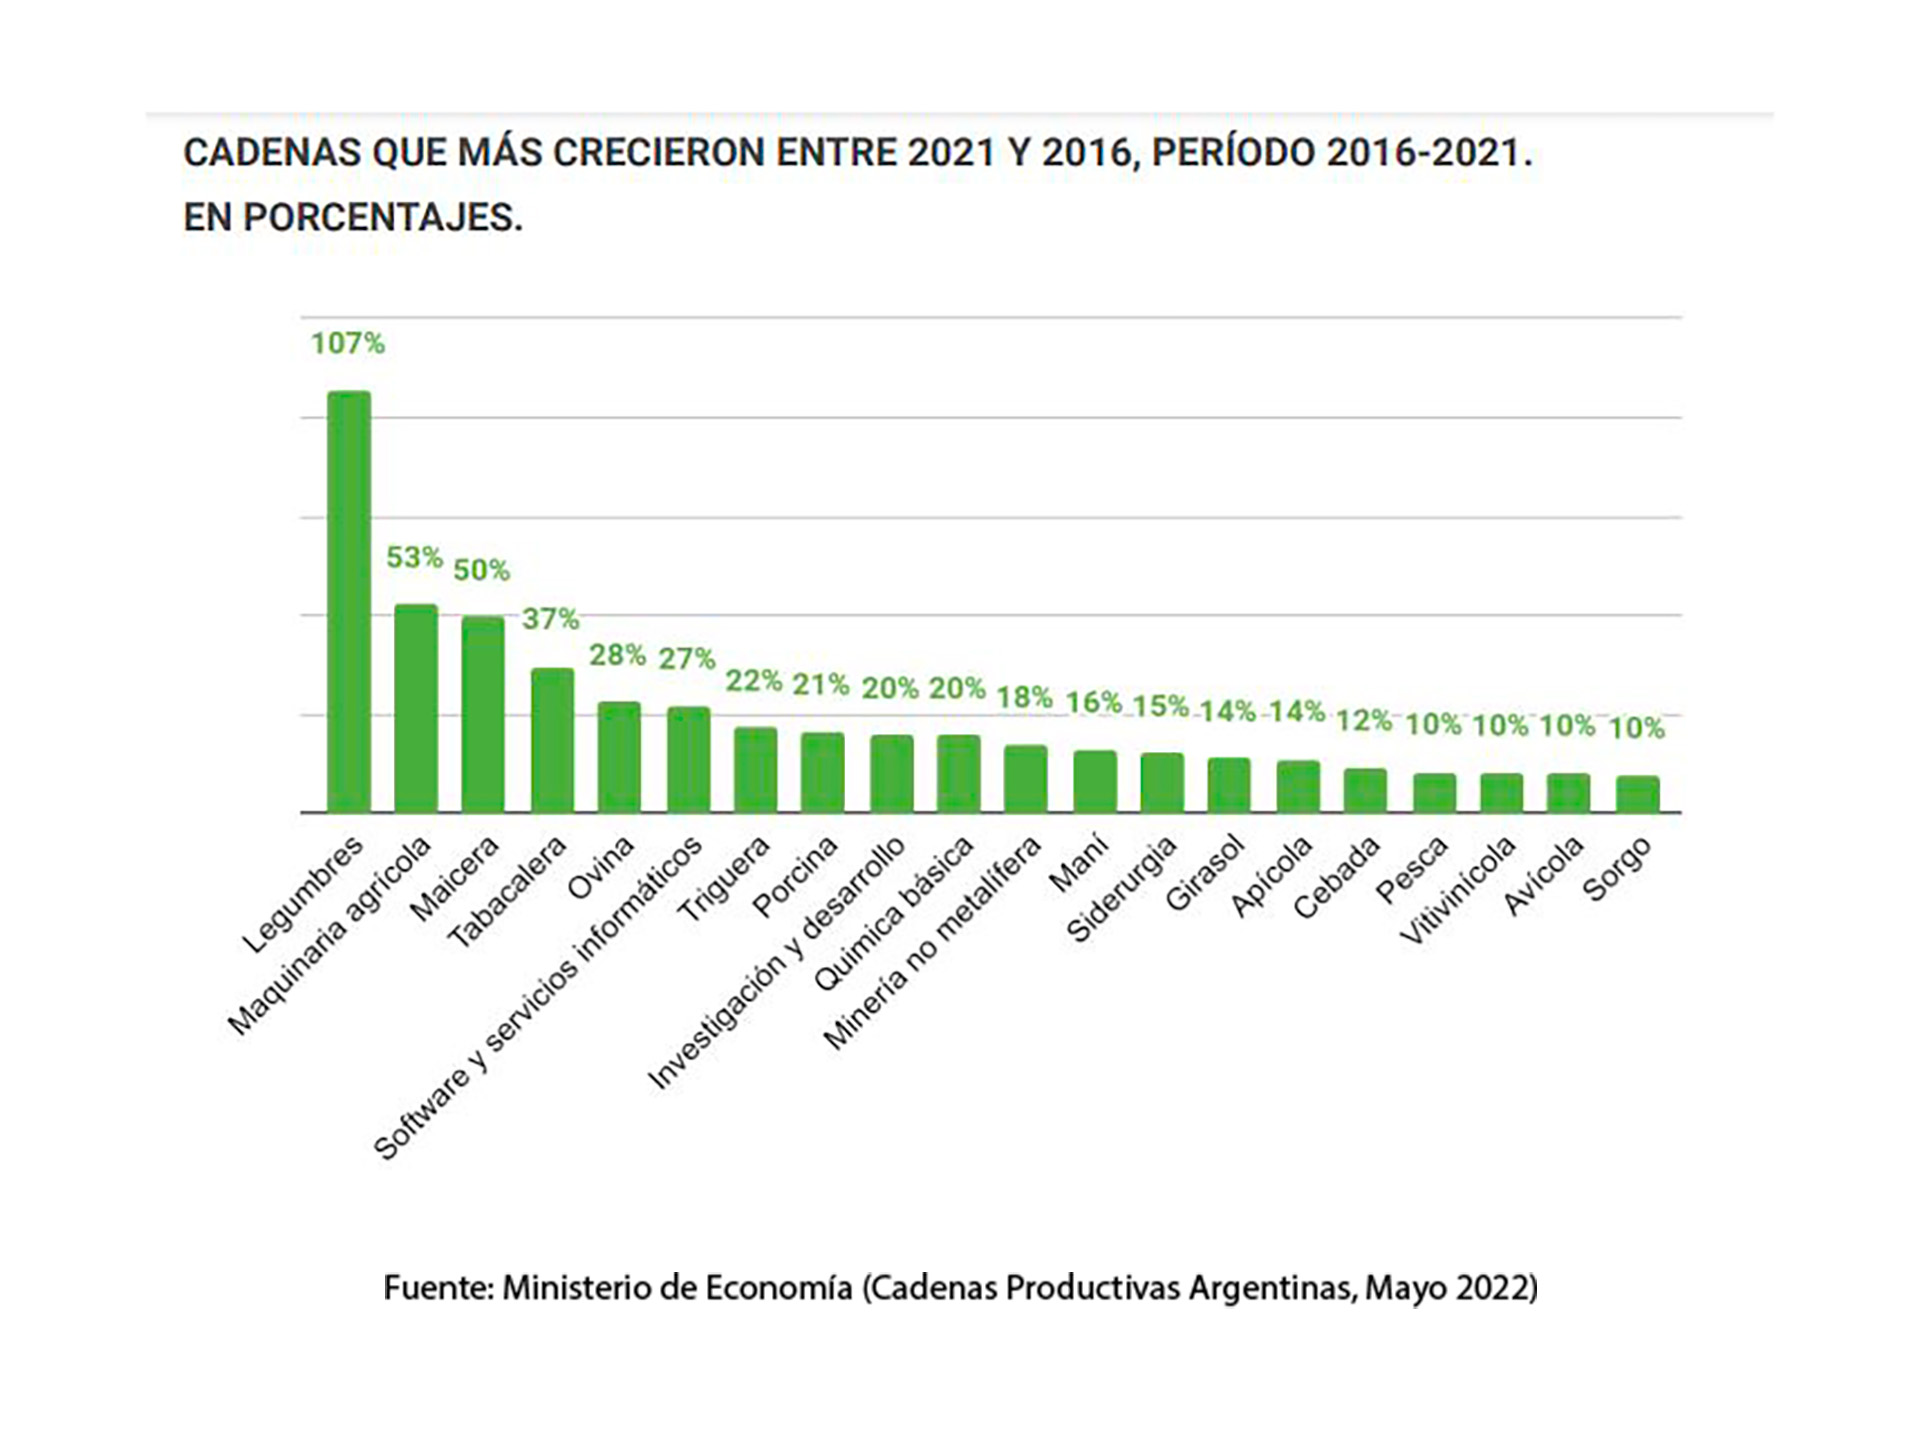 El crecimiento de las "cadenas productivas argentina" entre 2016 y 2021, según un documento del Ministerio de Economía. El complejo maicero, estrechamente definido, aparece tercero. Además, es el segundo mayor aportante neto de dólares a la balanza comercial del país